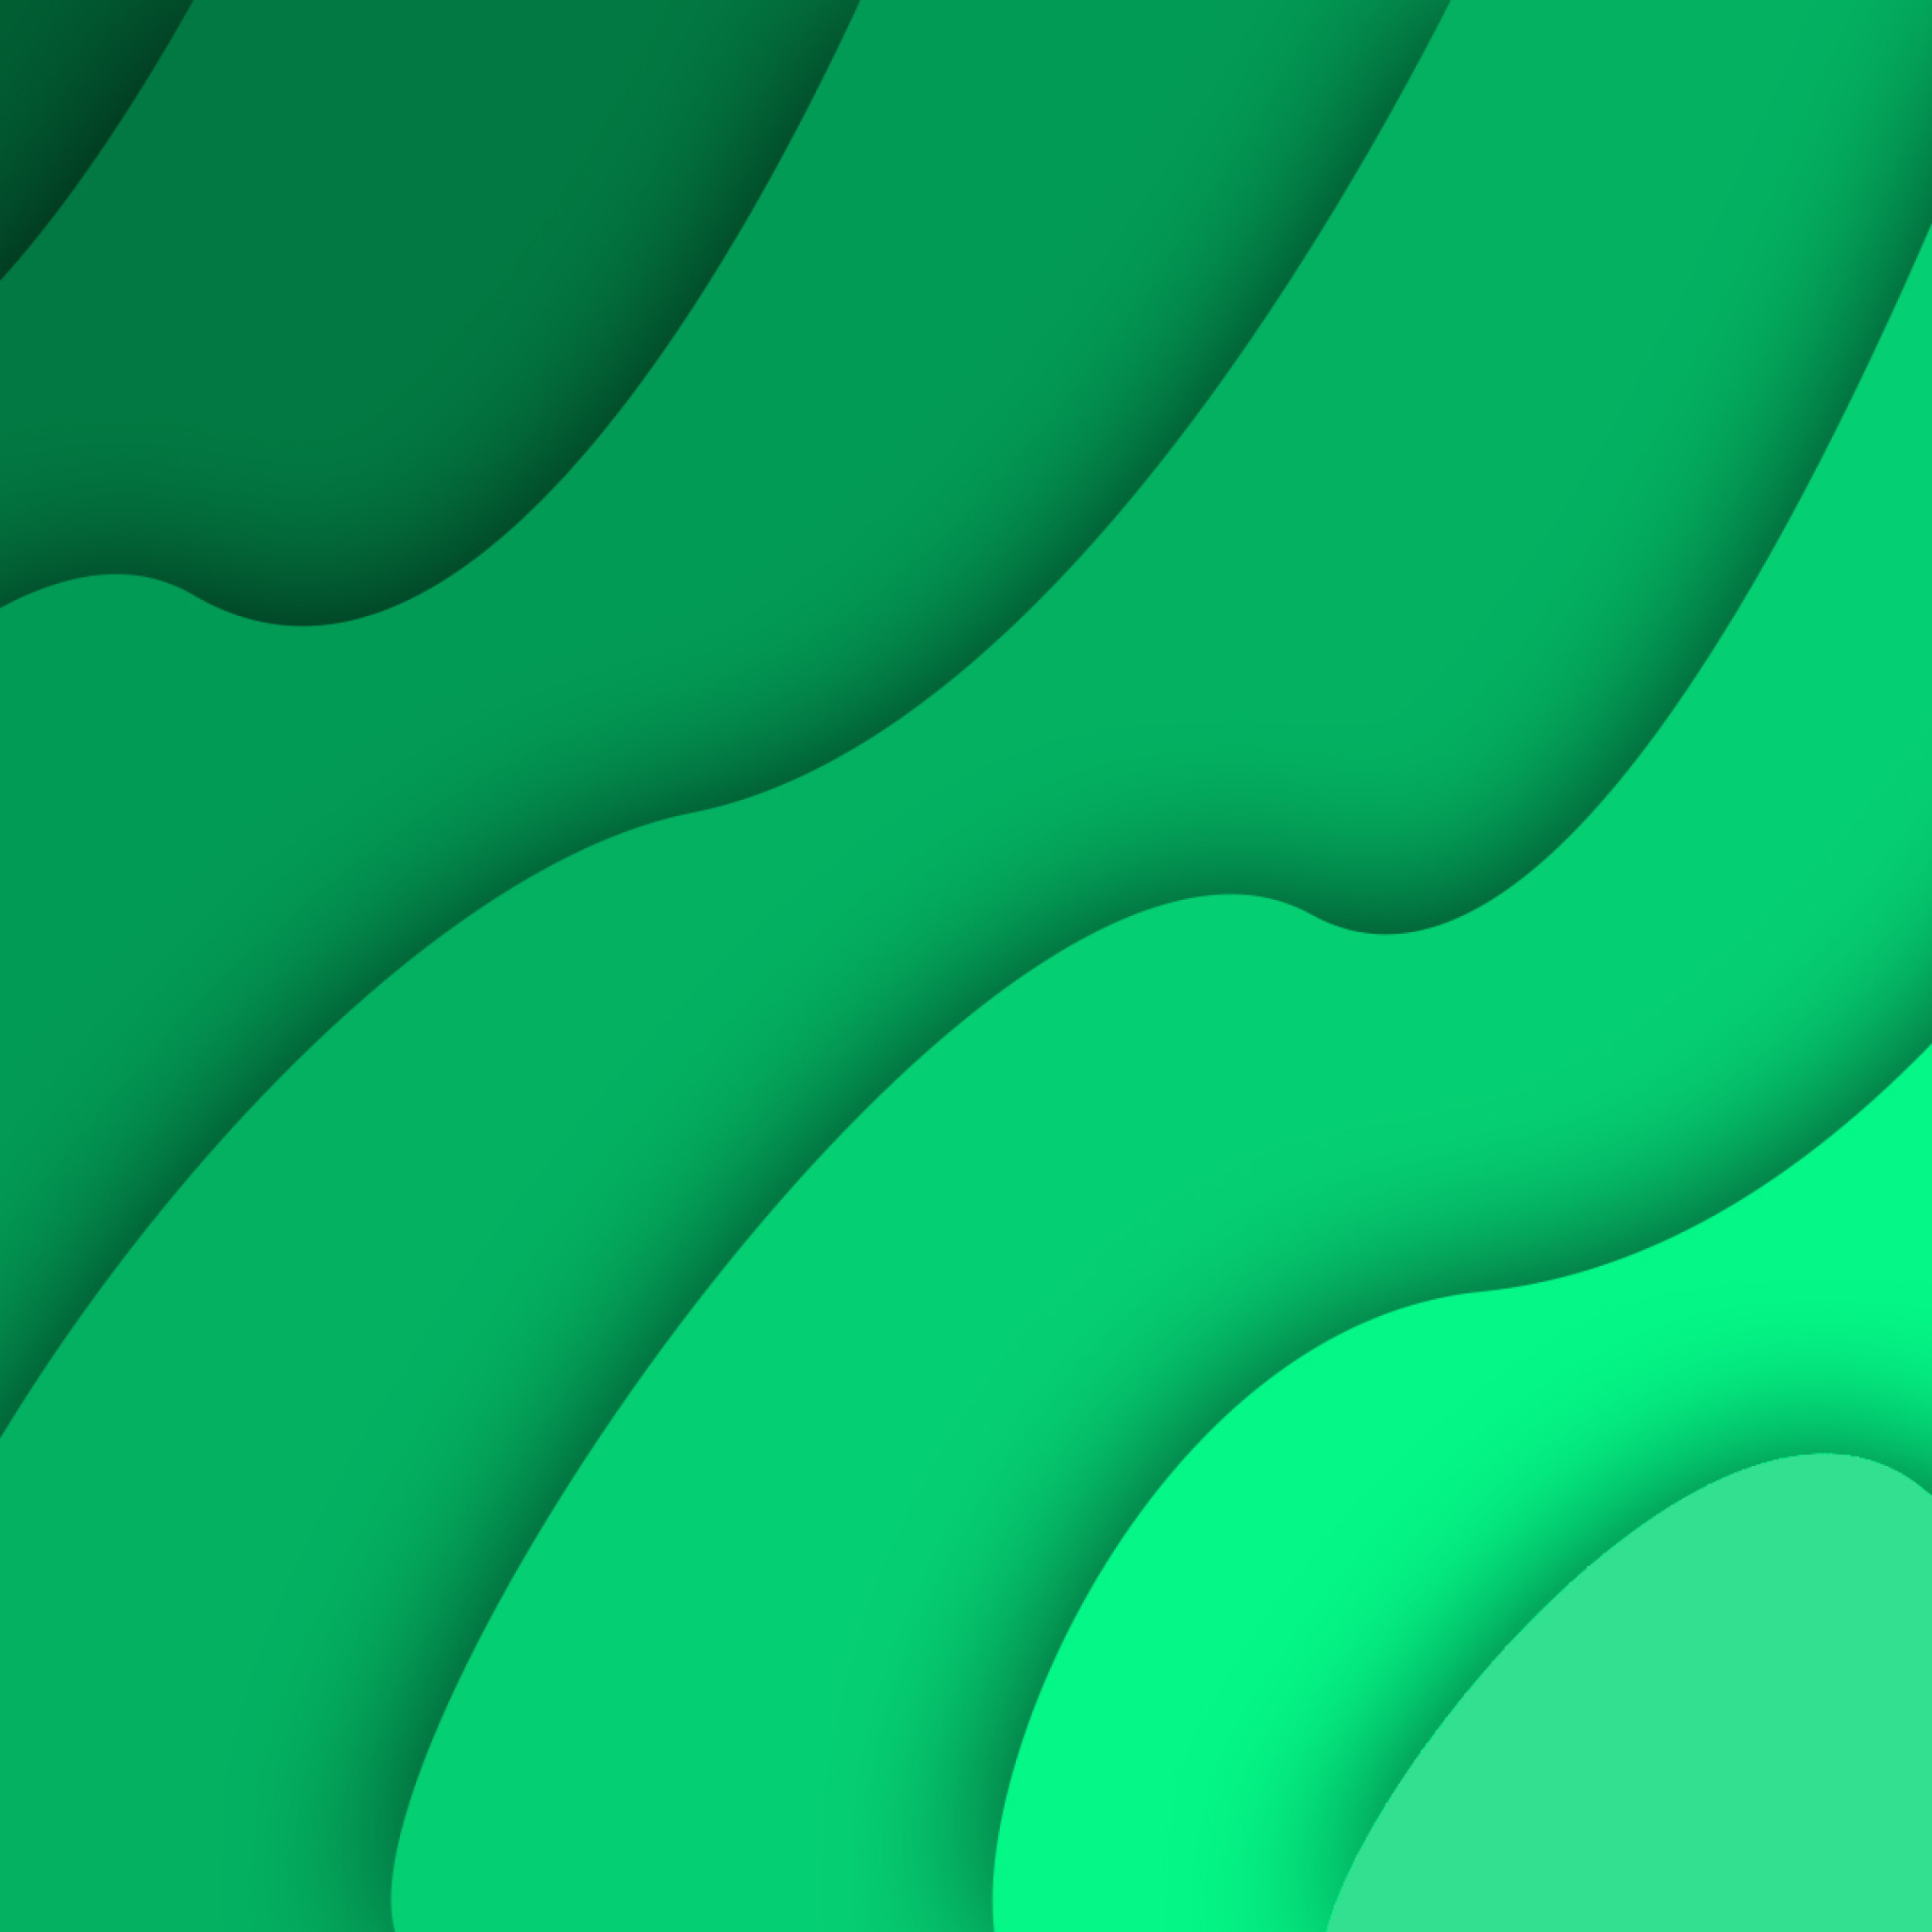 Green Waves wallpaper 2048x2048